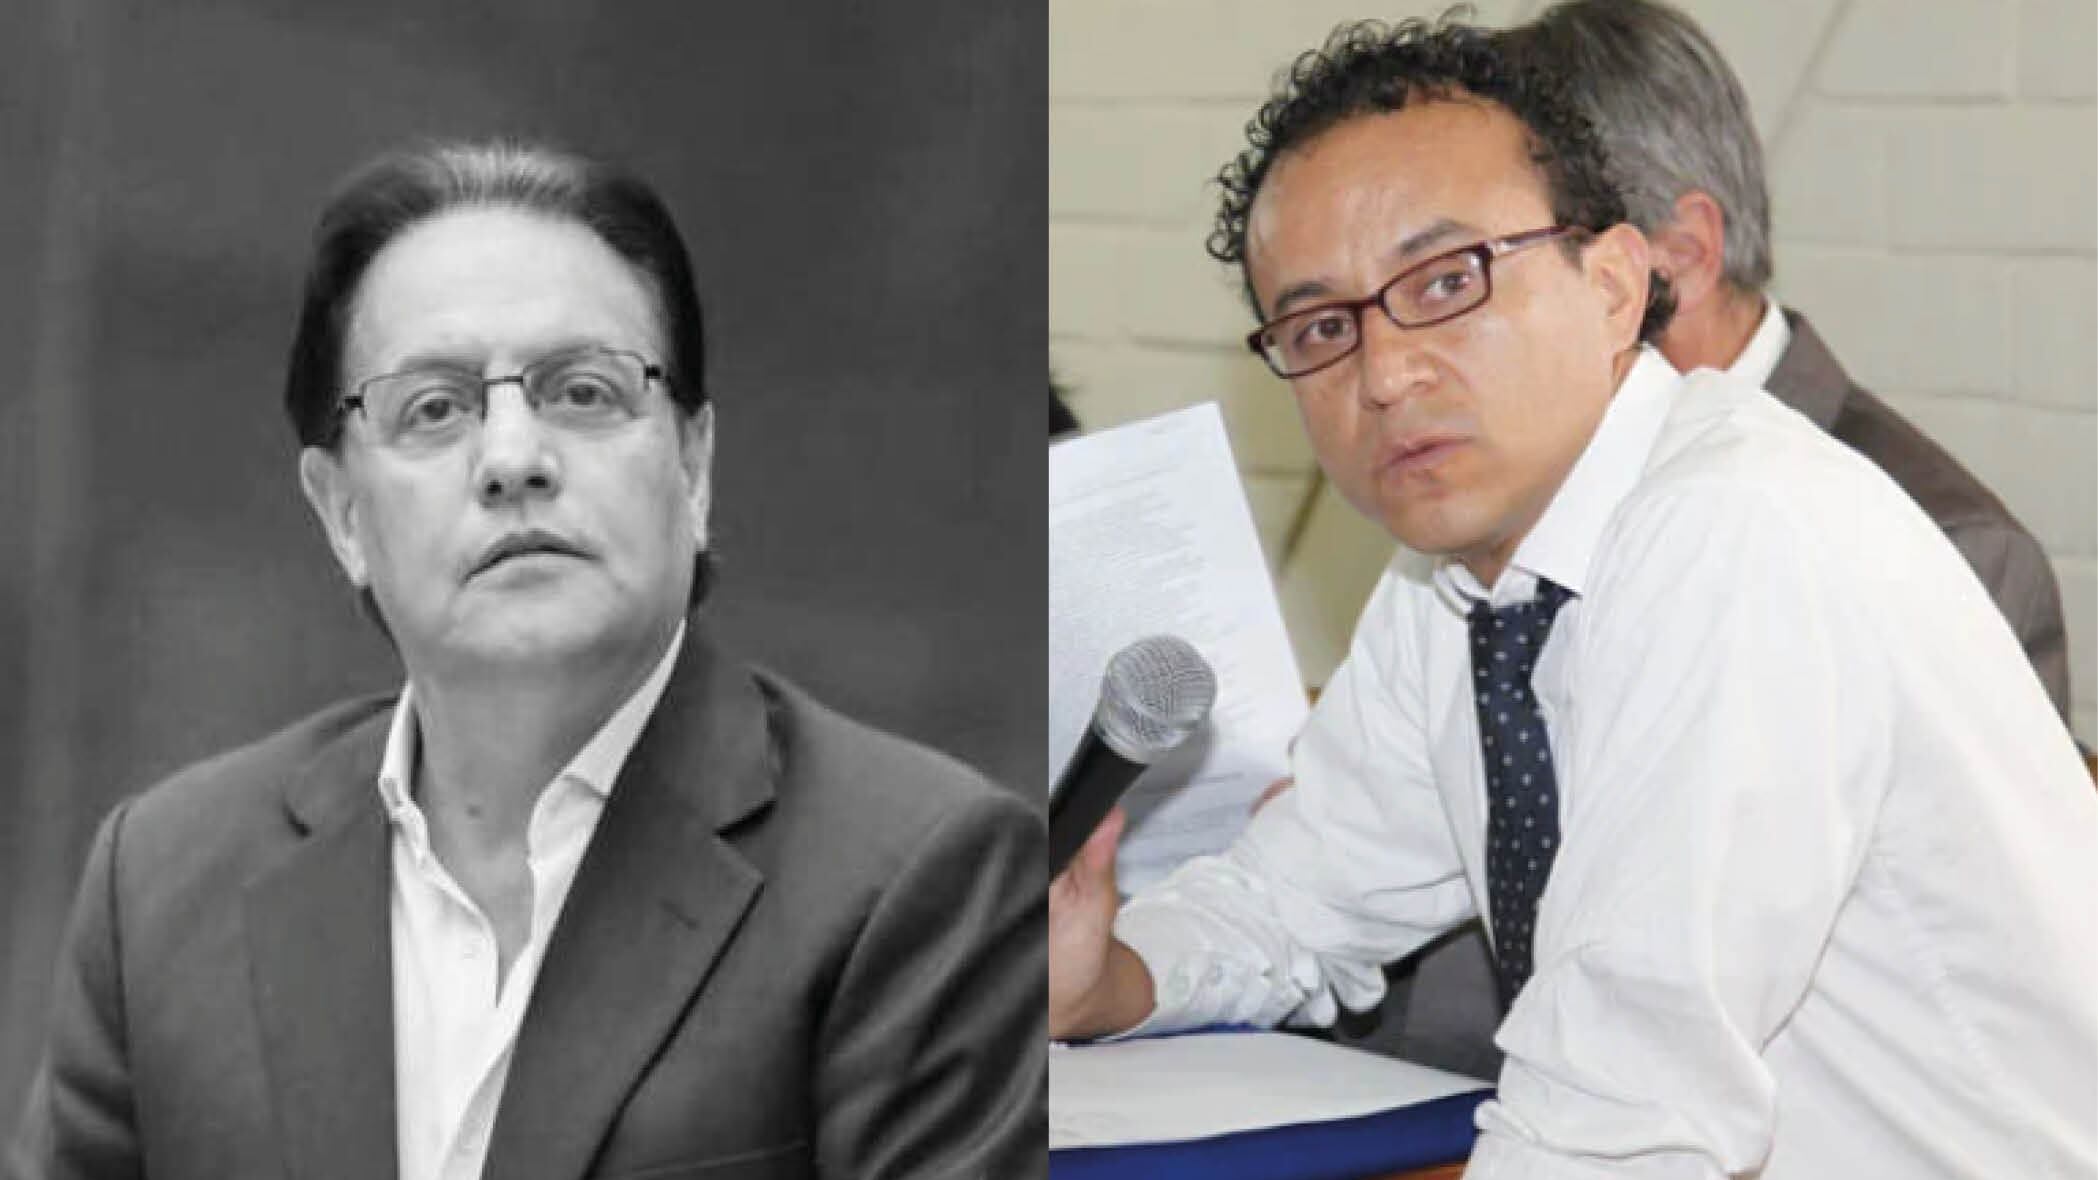 El partido “Construye Ecuador” nombra a Christian Zurita como candidato presidencial en reemplazo de Fernando Villavicencio